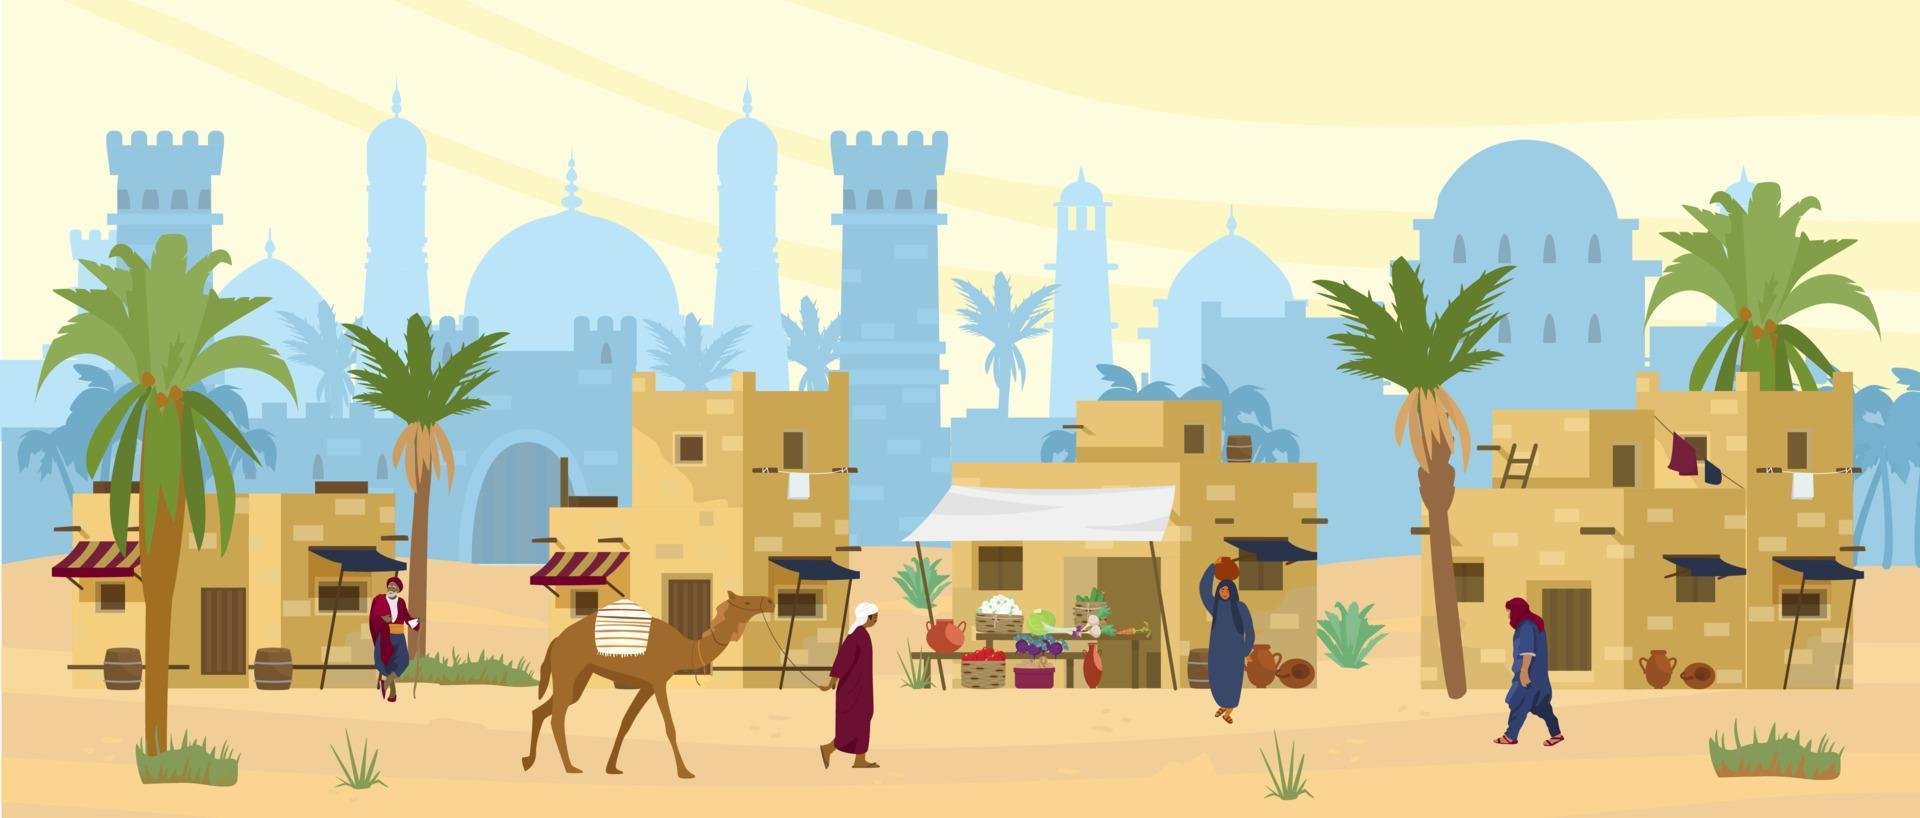 Arabische Wüstenlandschaft mit traditionellen Lehmziegelhäusern und Menschen. alter Tempel im Hintergrund. Beduine mit Kamel, Frau mit Krug auf dem Kopf. flache vektorillustration. vektor